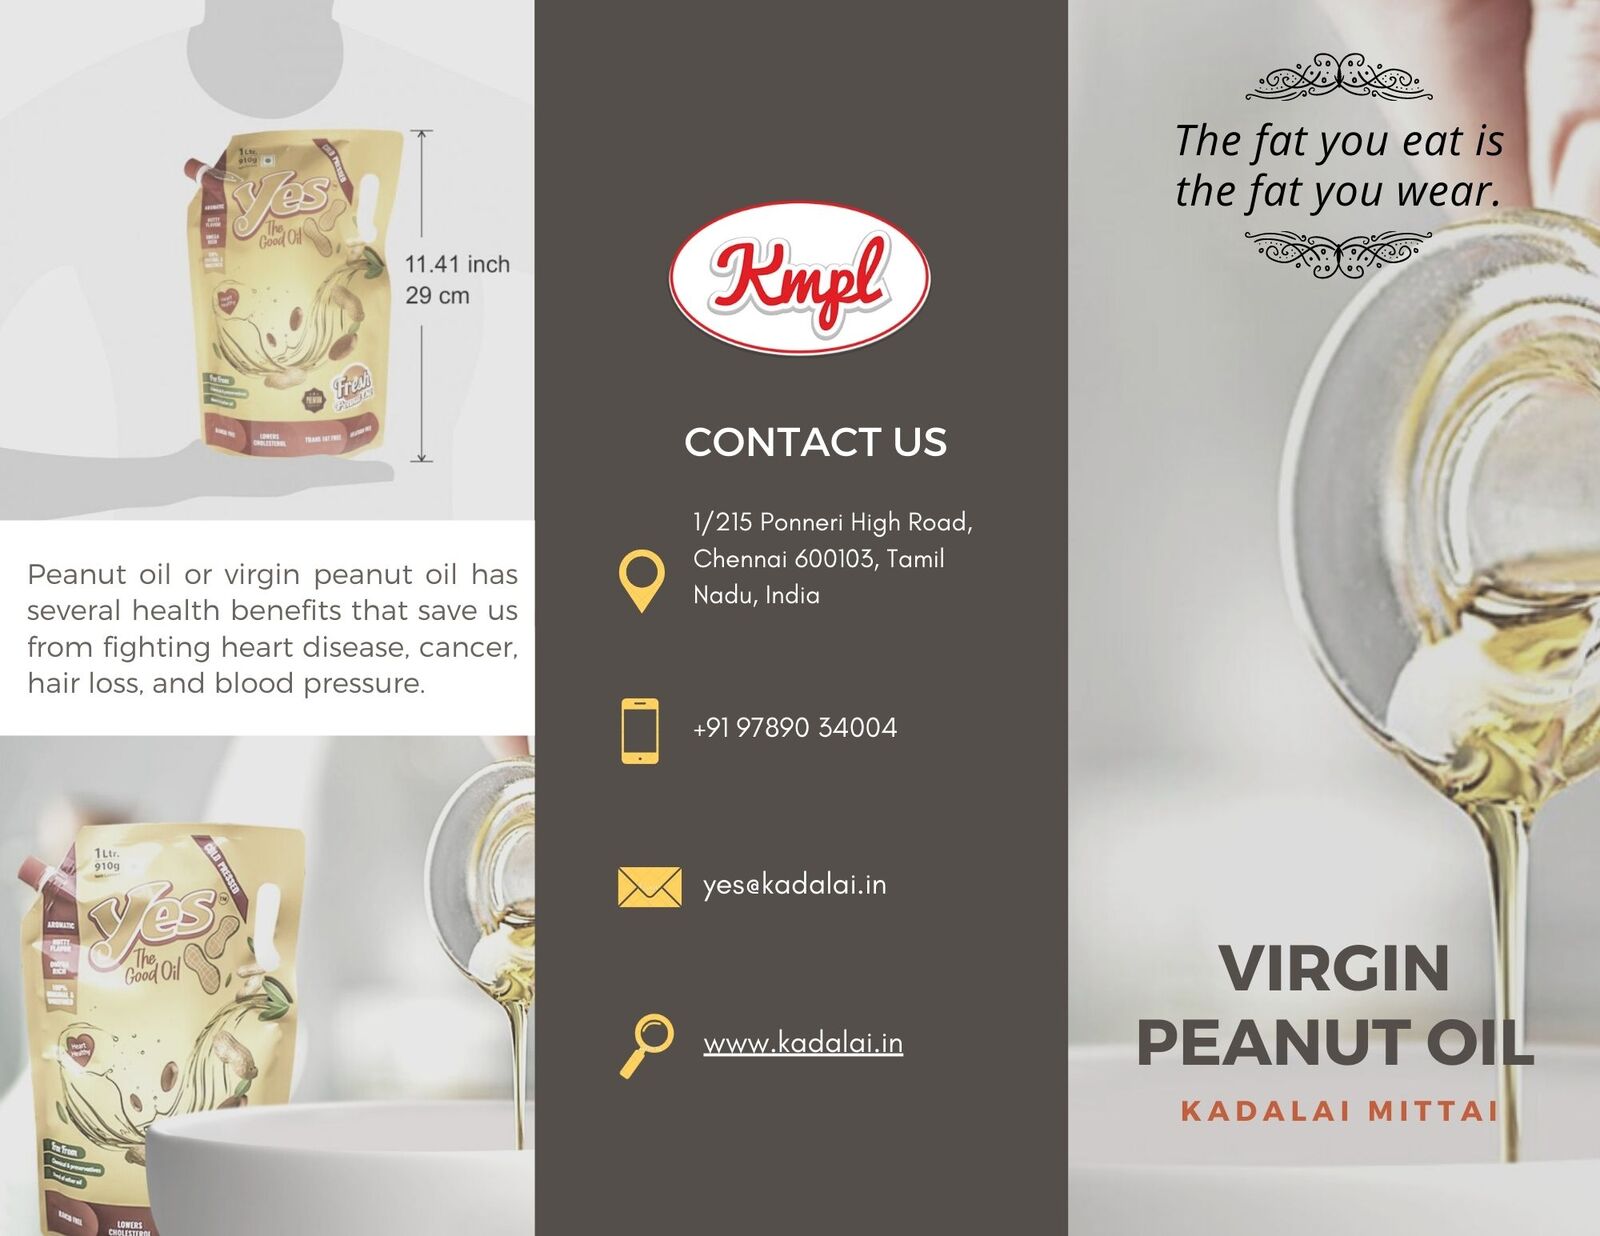 Buy Virgin Peanut Oil